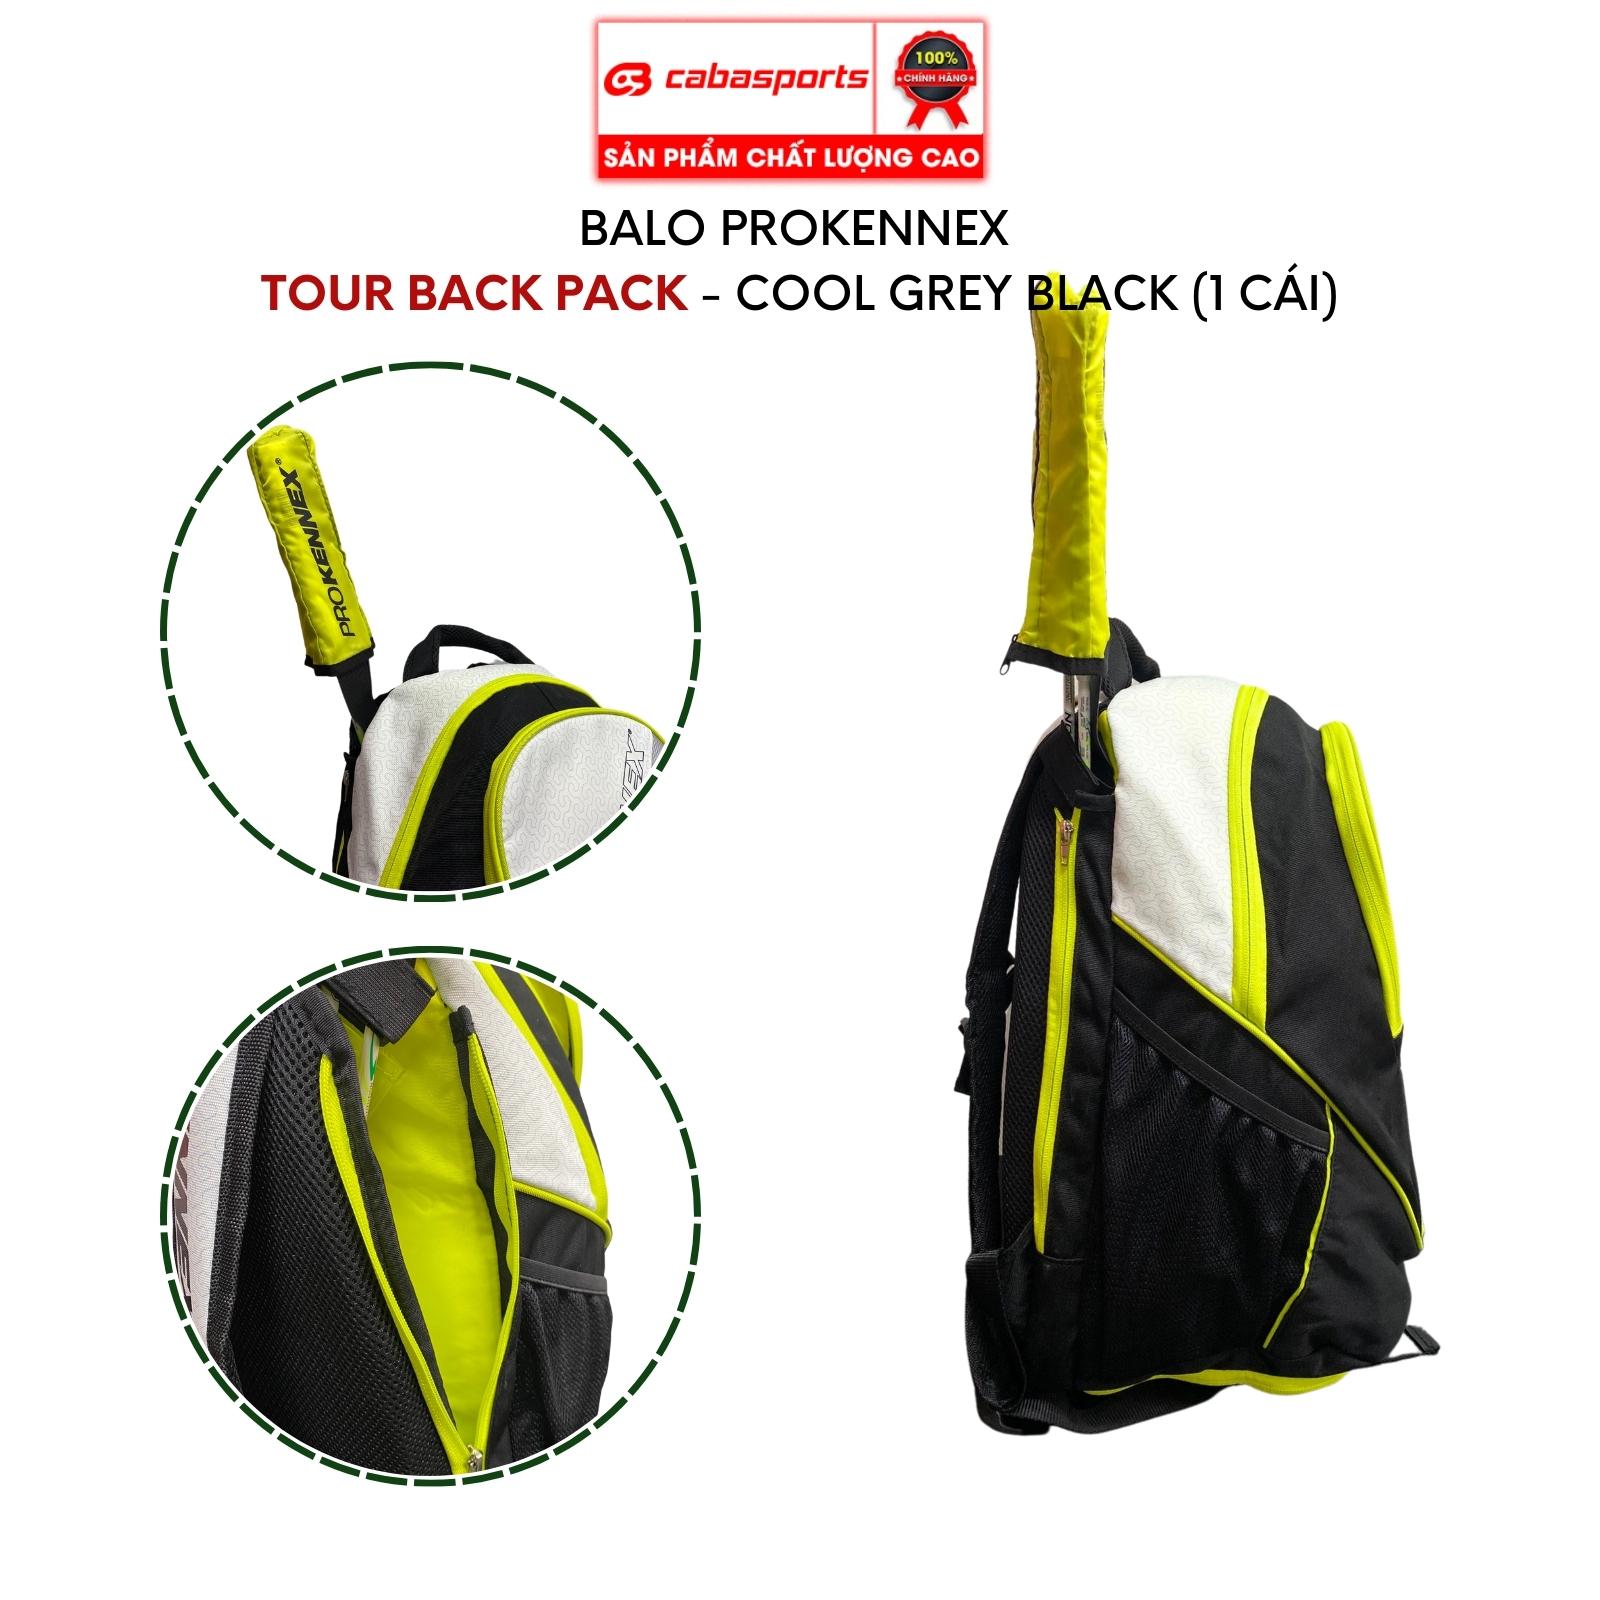 Túi thể thao Prokennex Tour Back Pack thời trang cao cấp, balo đựng vợt cầu lông tennis chất lượng chính hãng